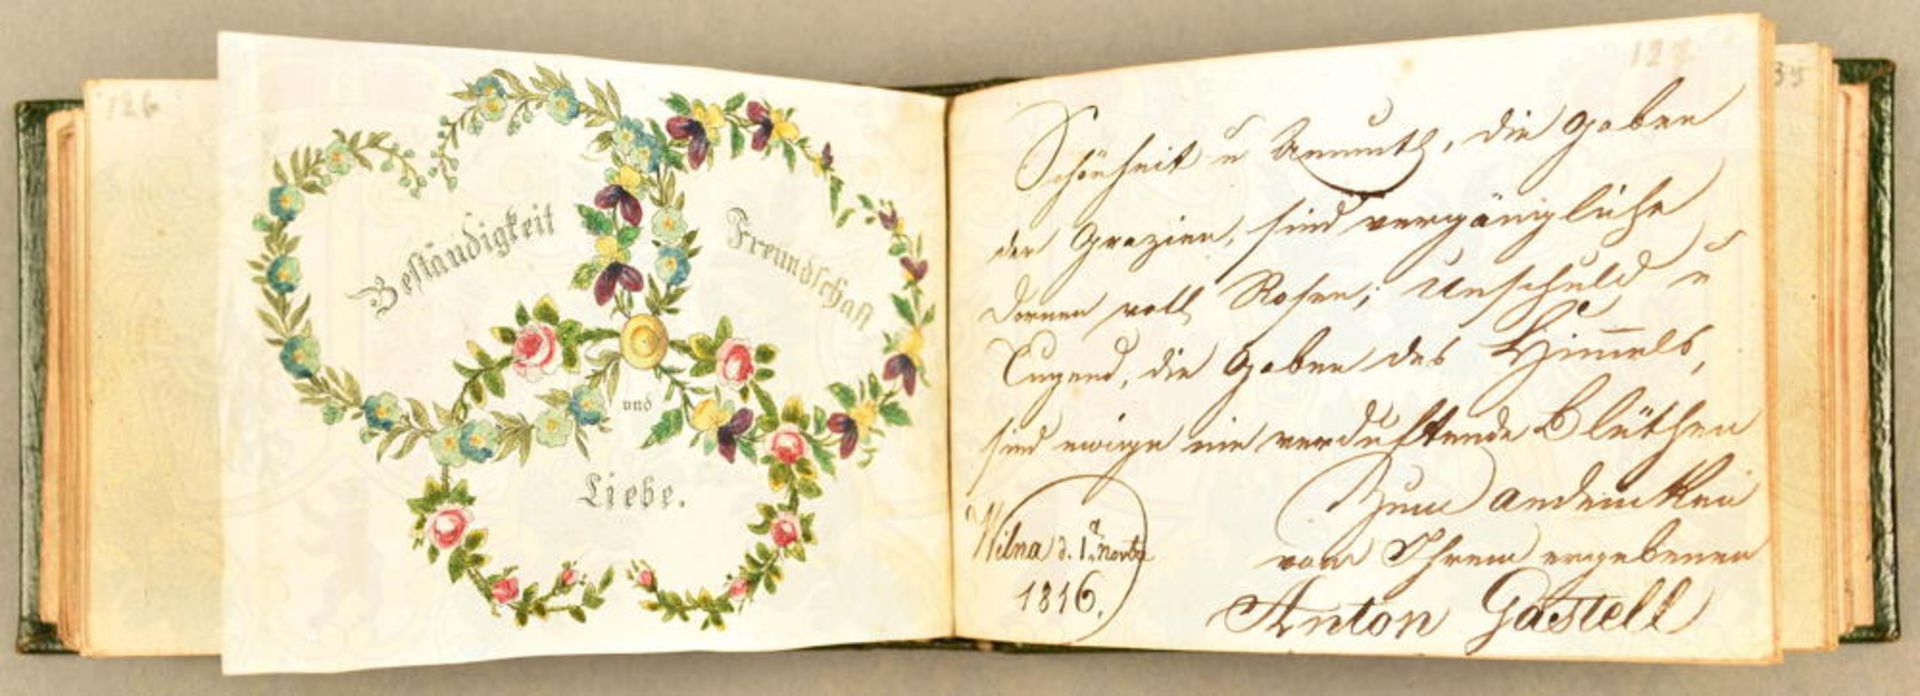 Poesie-Album einer Dame 1813-1844 - Image 3 of 4